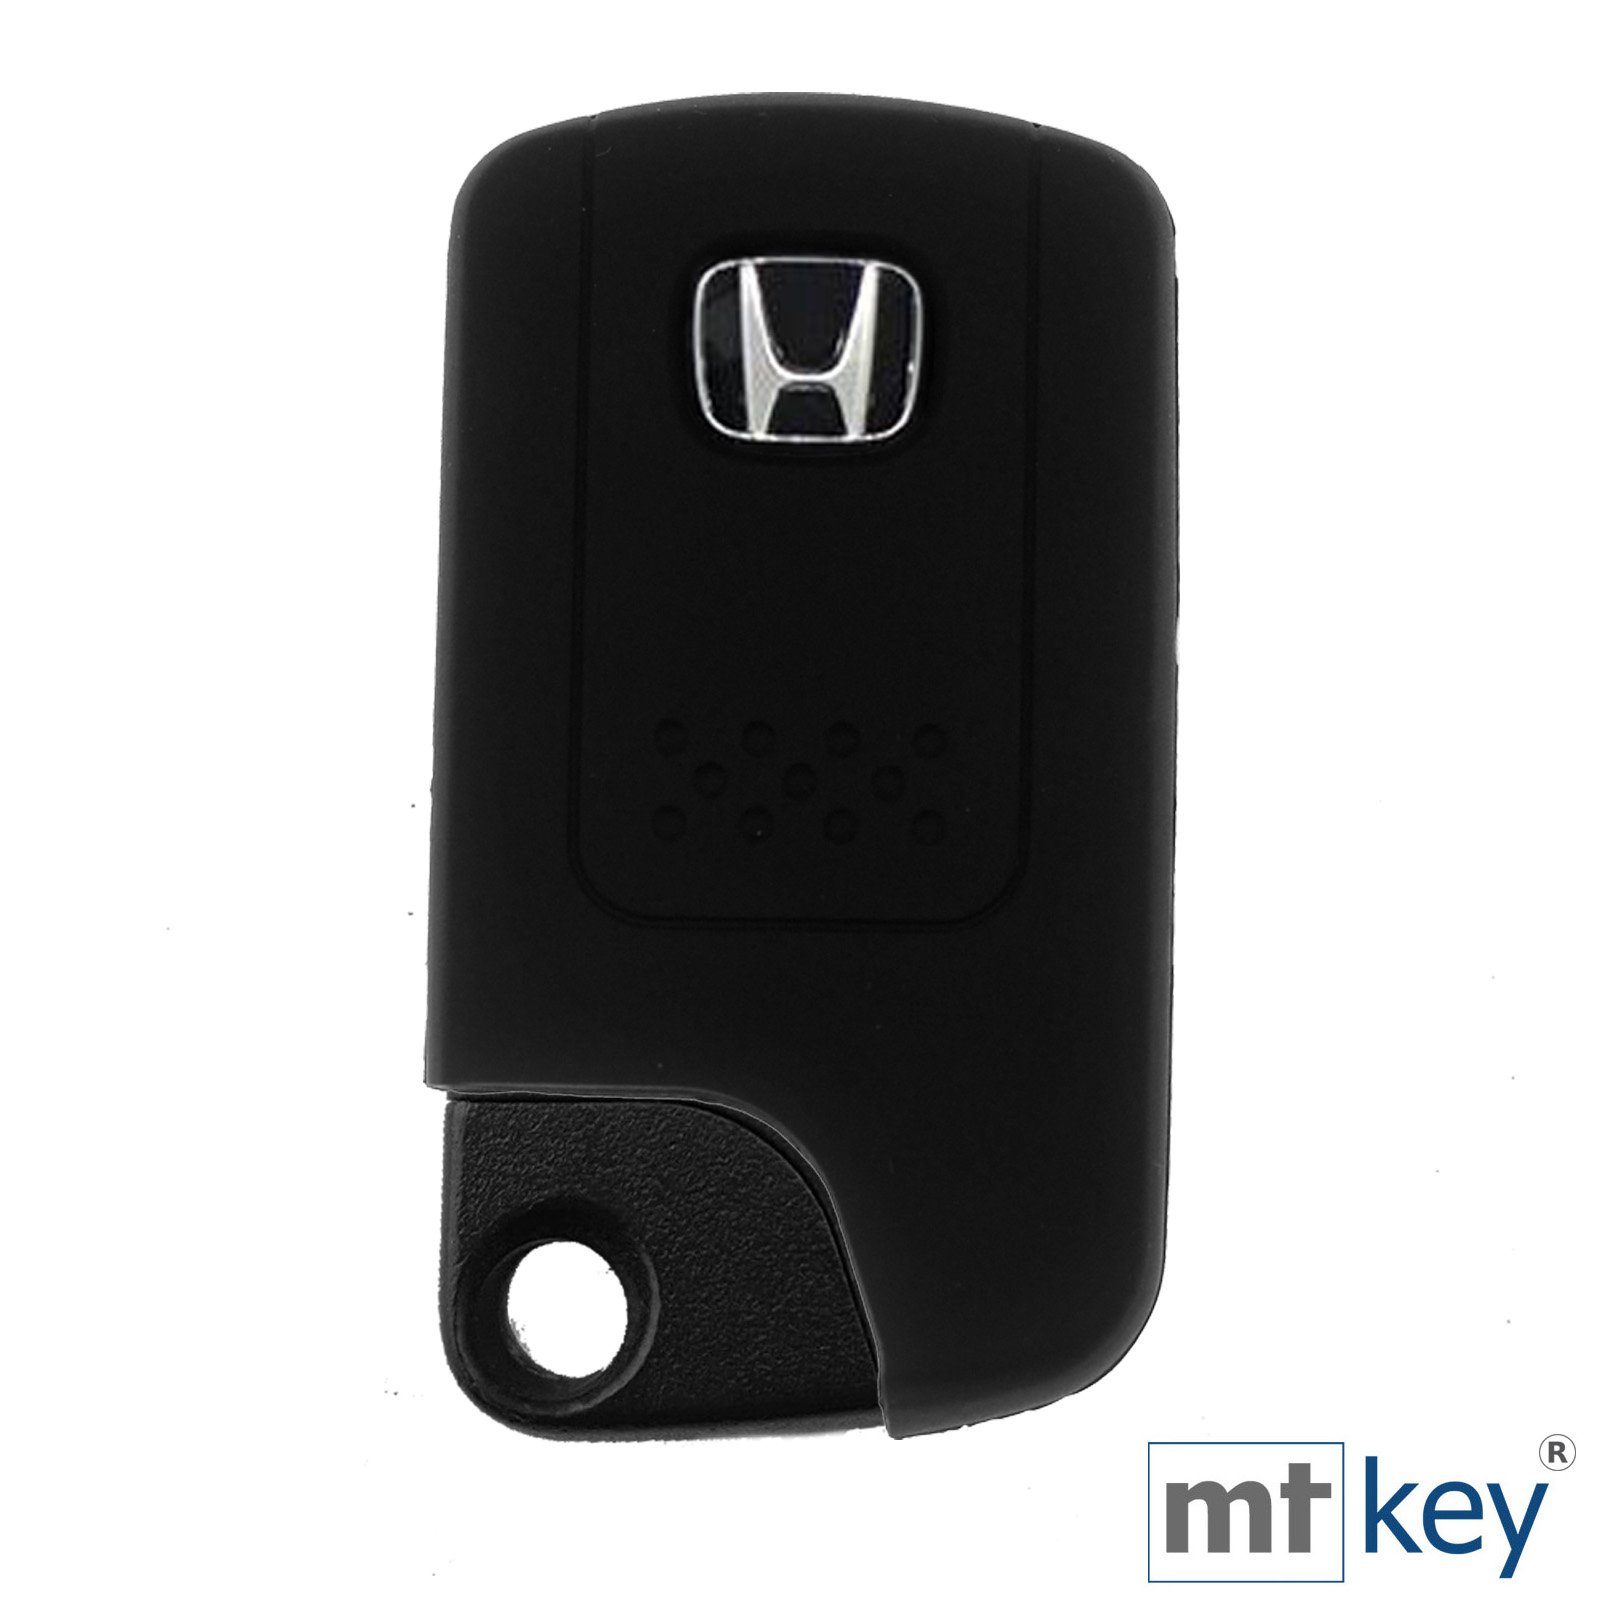 mt-key Schlüsseltasche Autoschlüssel Softcase SMARTKEY Honda CR-V Civic 3 KEYLESS Schwarz Accord Schutzhülle für Silikon Tasten mit Schlüsselband, CR-Z Insight